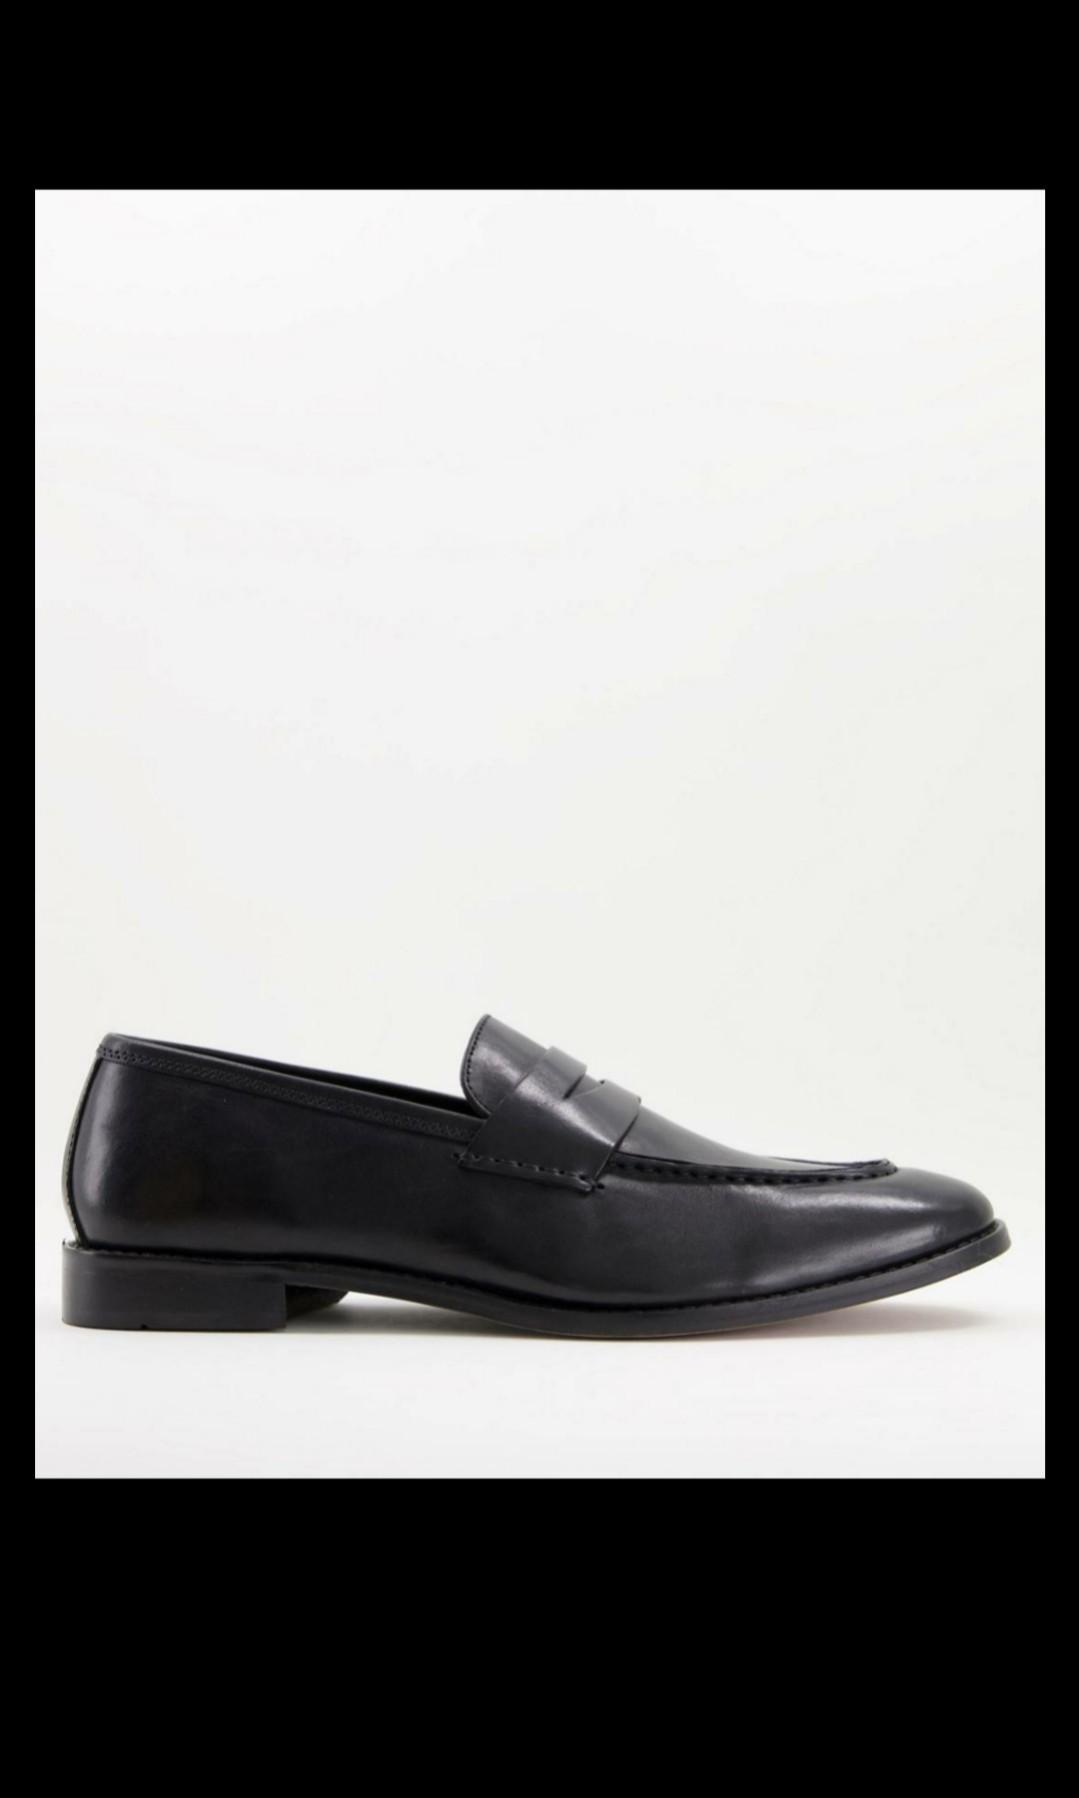 ASOS DESIGN black leather penny loafer